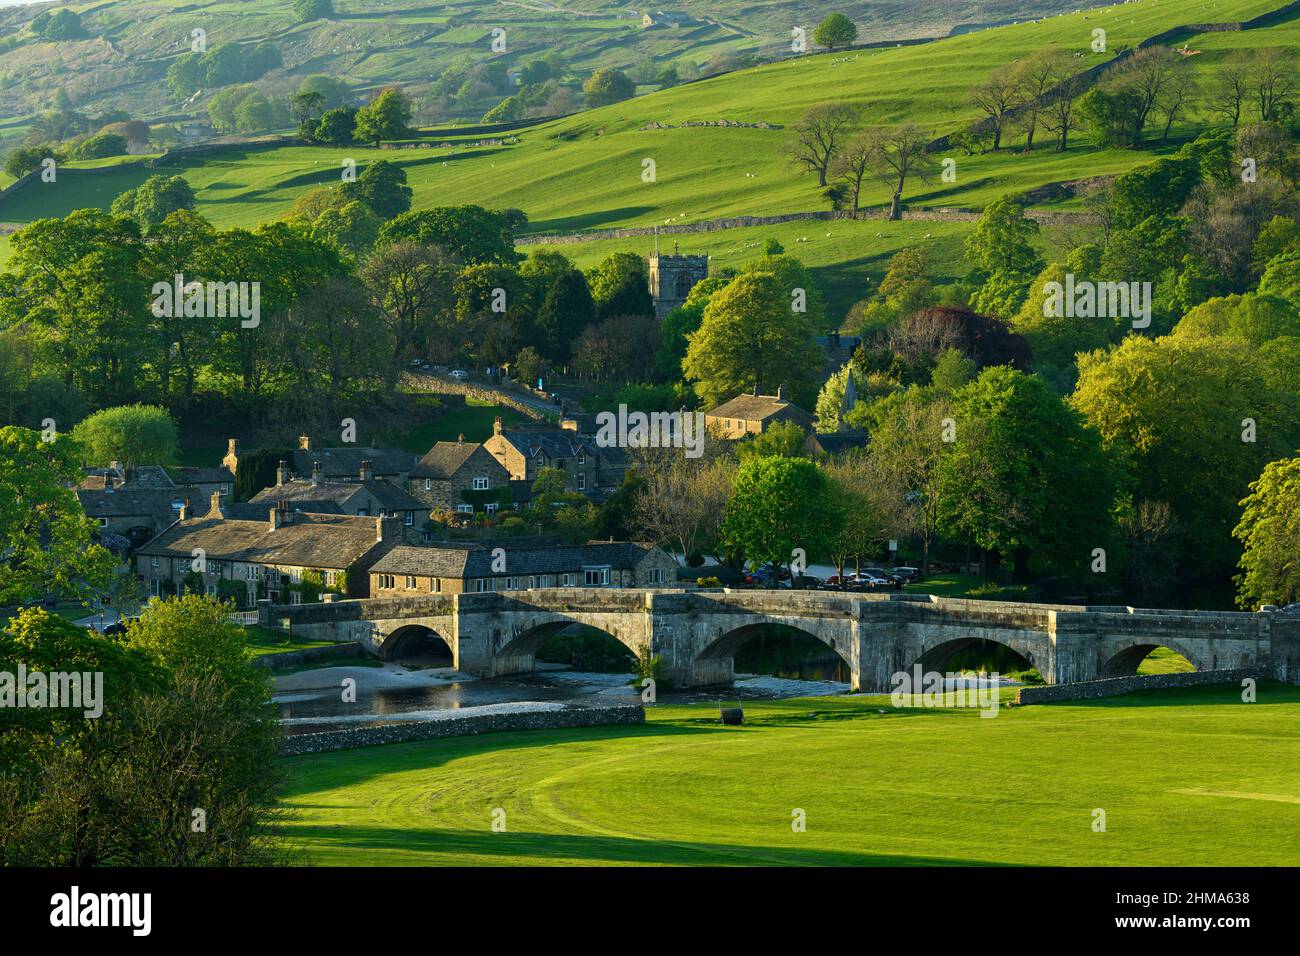 Panoramica Burnsall soleggiato immerso nella valle (5-arched ponte, case attraenti, chiesa torre, verde collina campi) - Yorkshire Dales, Inghilterra, Regno Unito. Foto Stock